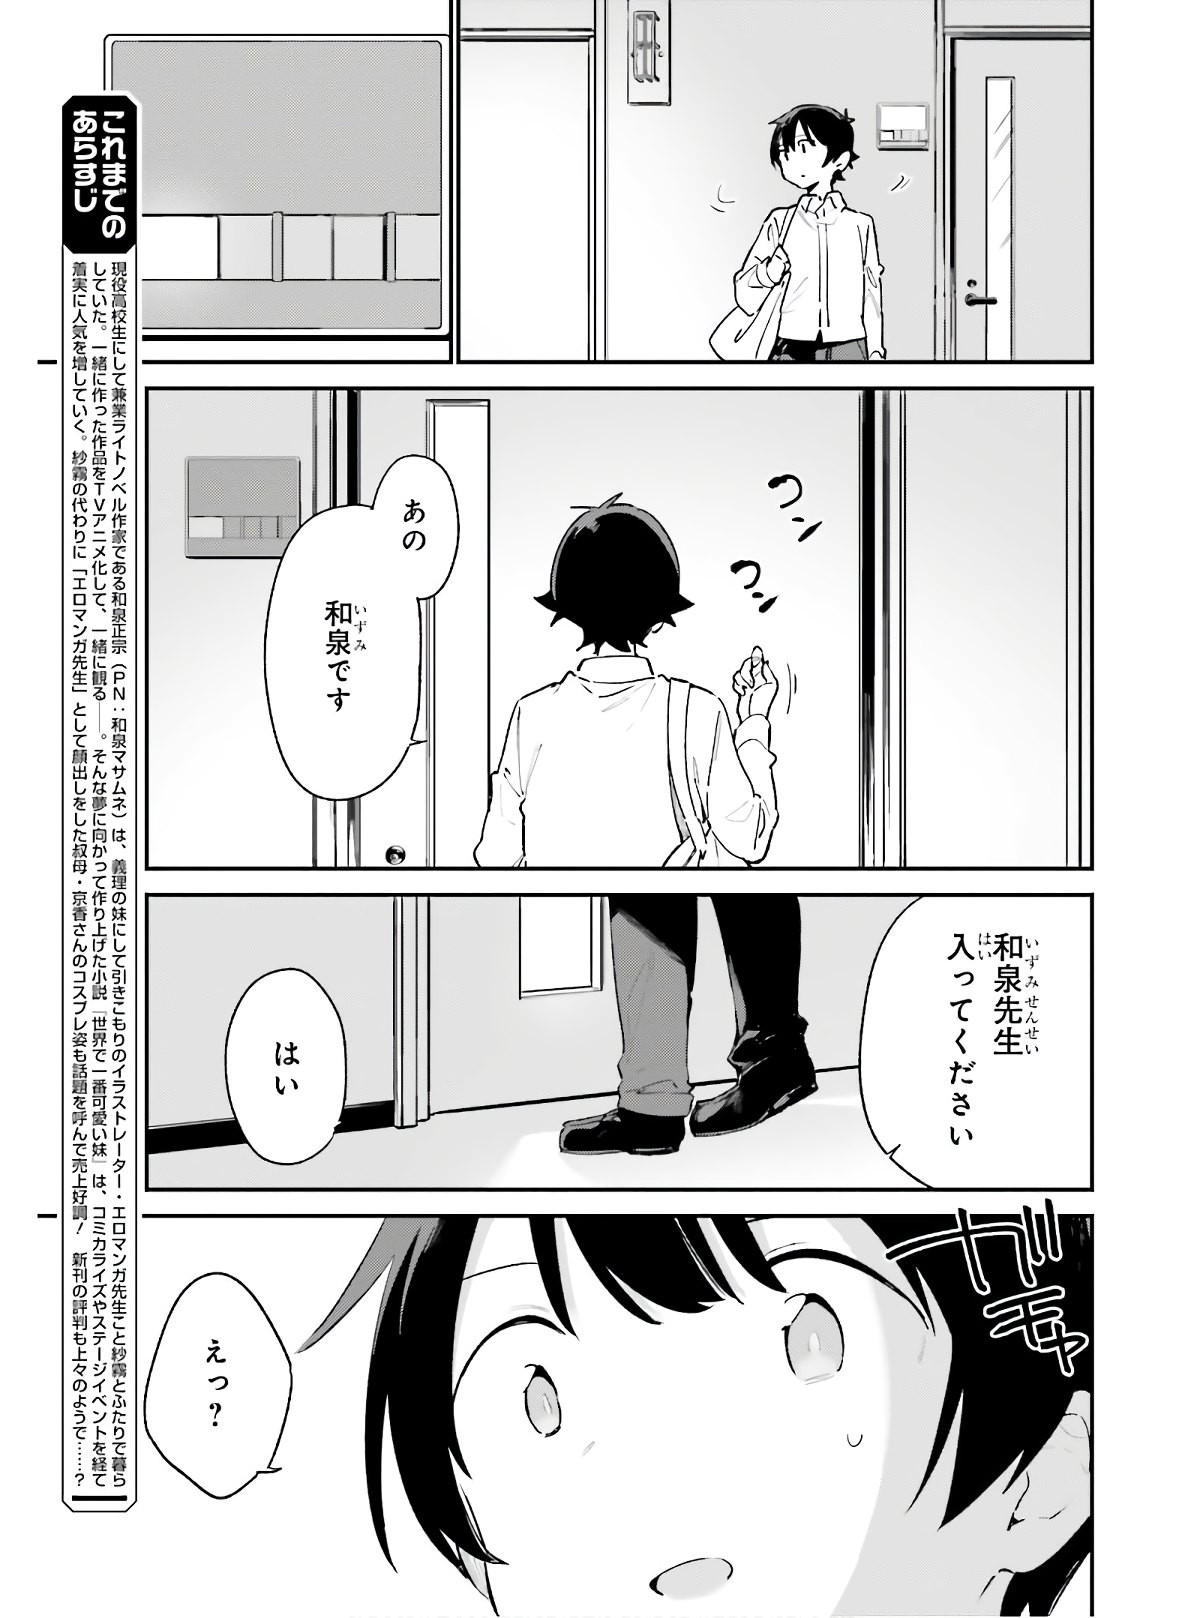 Ero Manga Sensei - Chapter 73 - Page 3